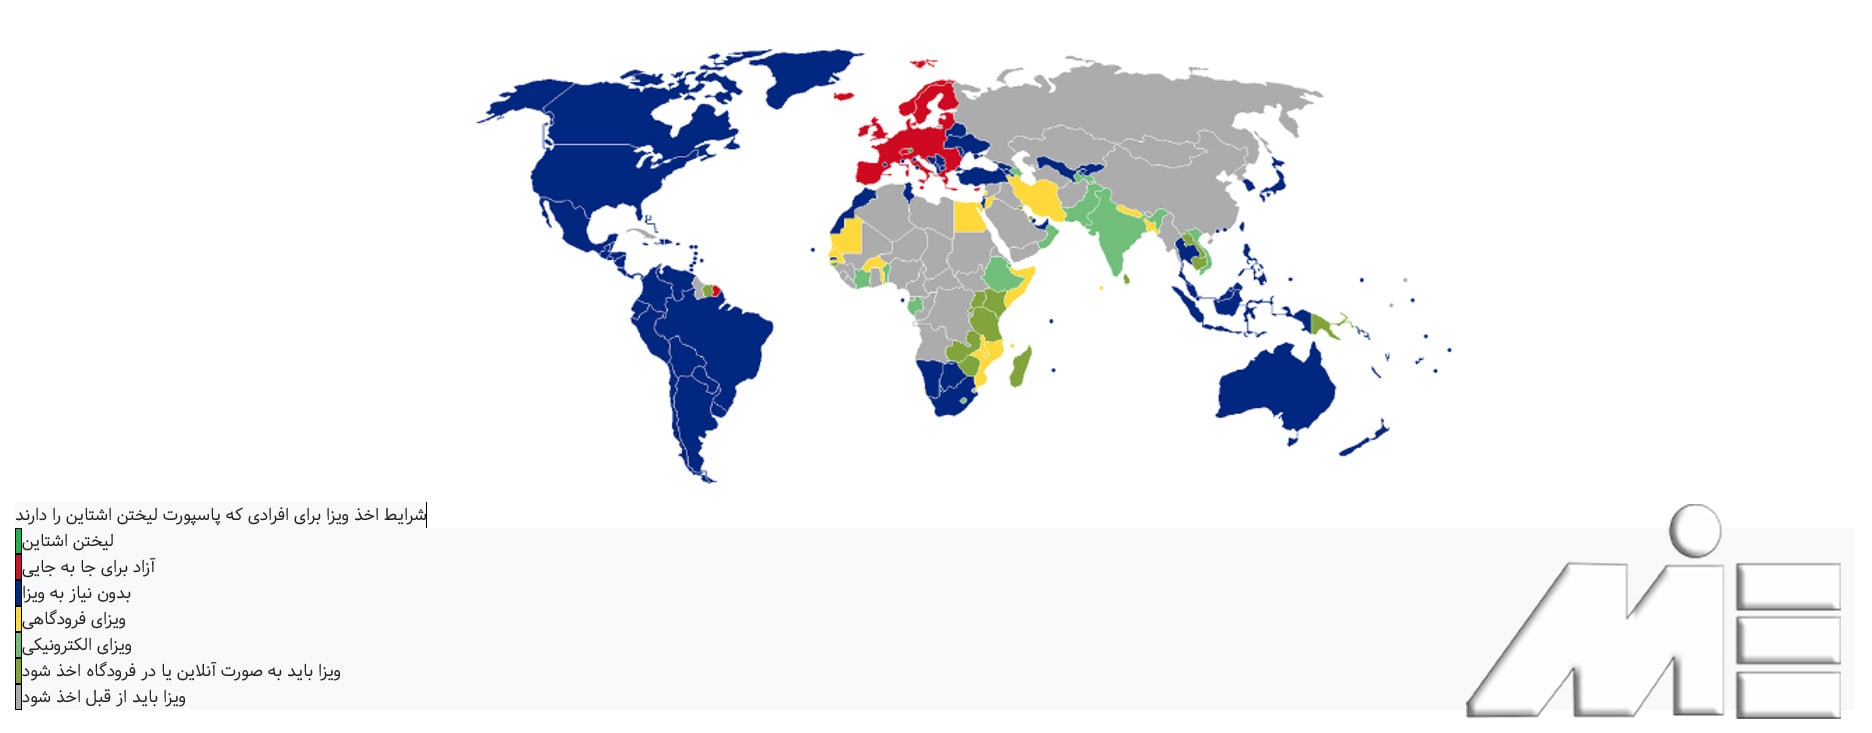 نقشه آزادی سفر برای دارندگان پاسپورت لیختن